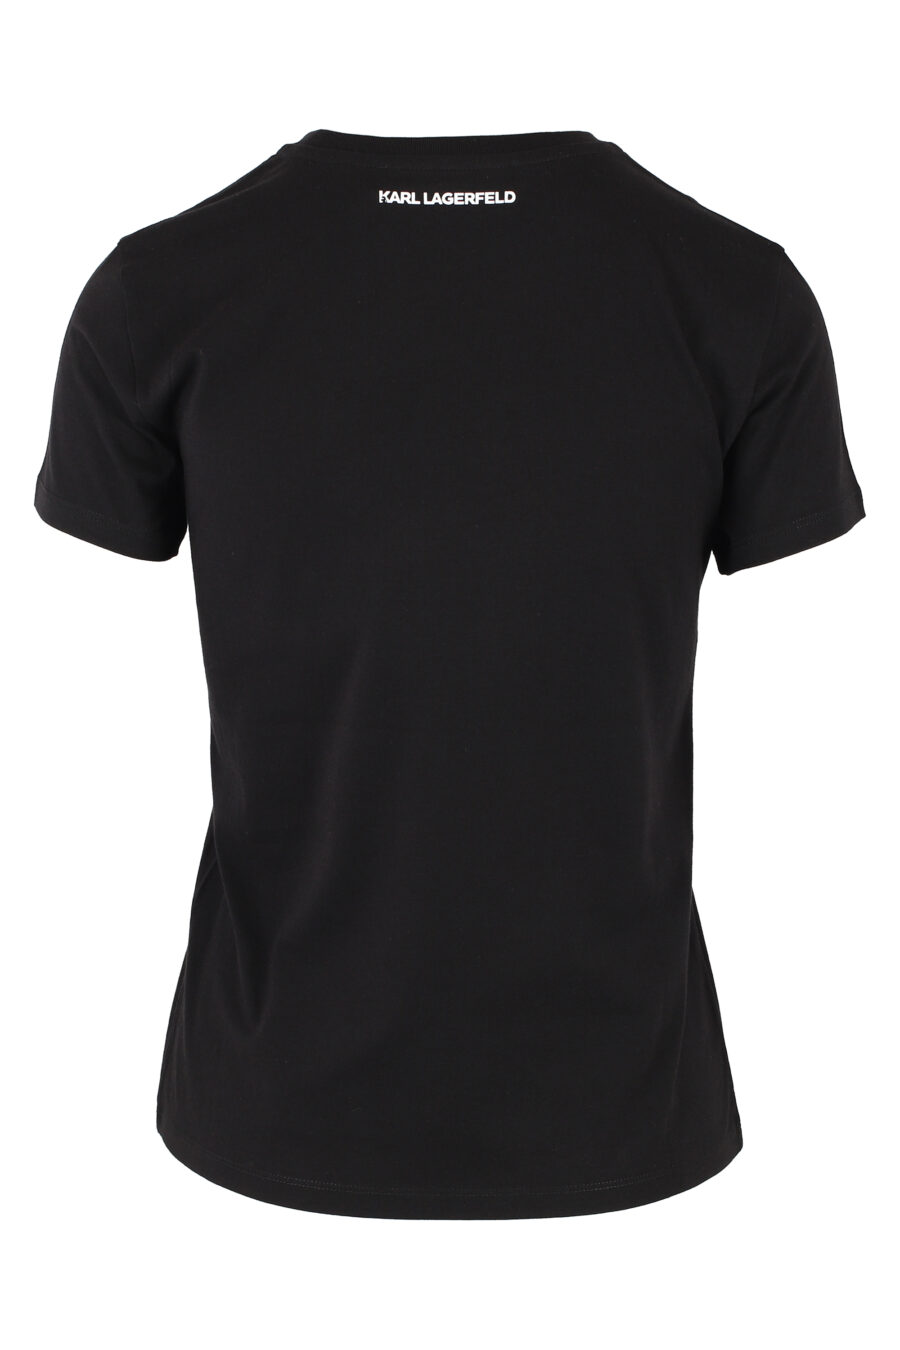 Camiseta negra con logo en strass - IMG 5039